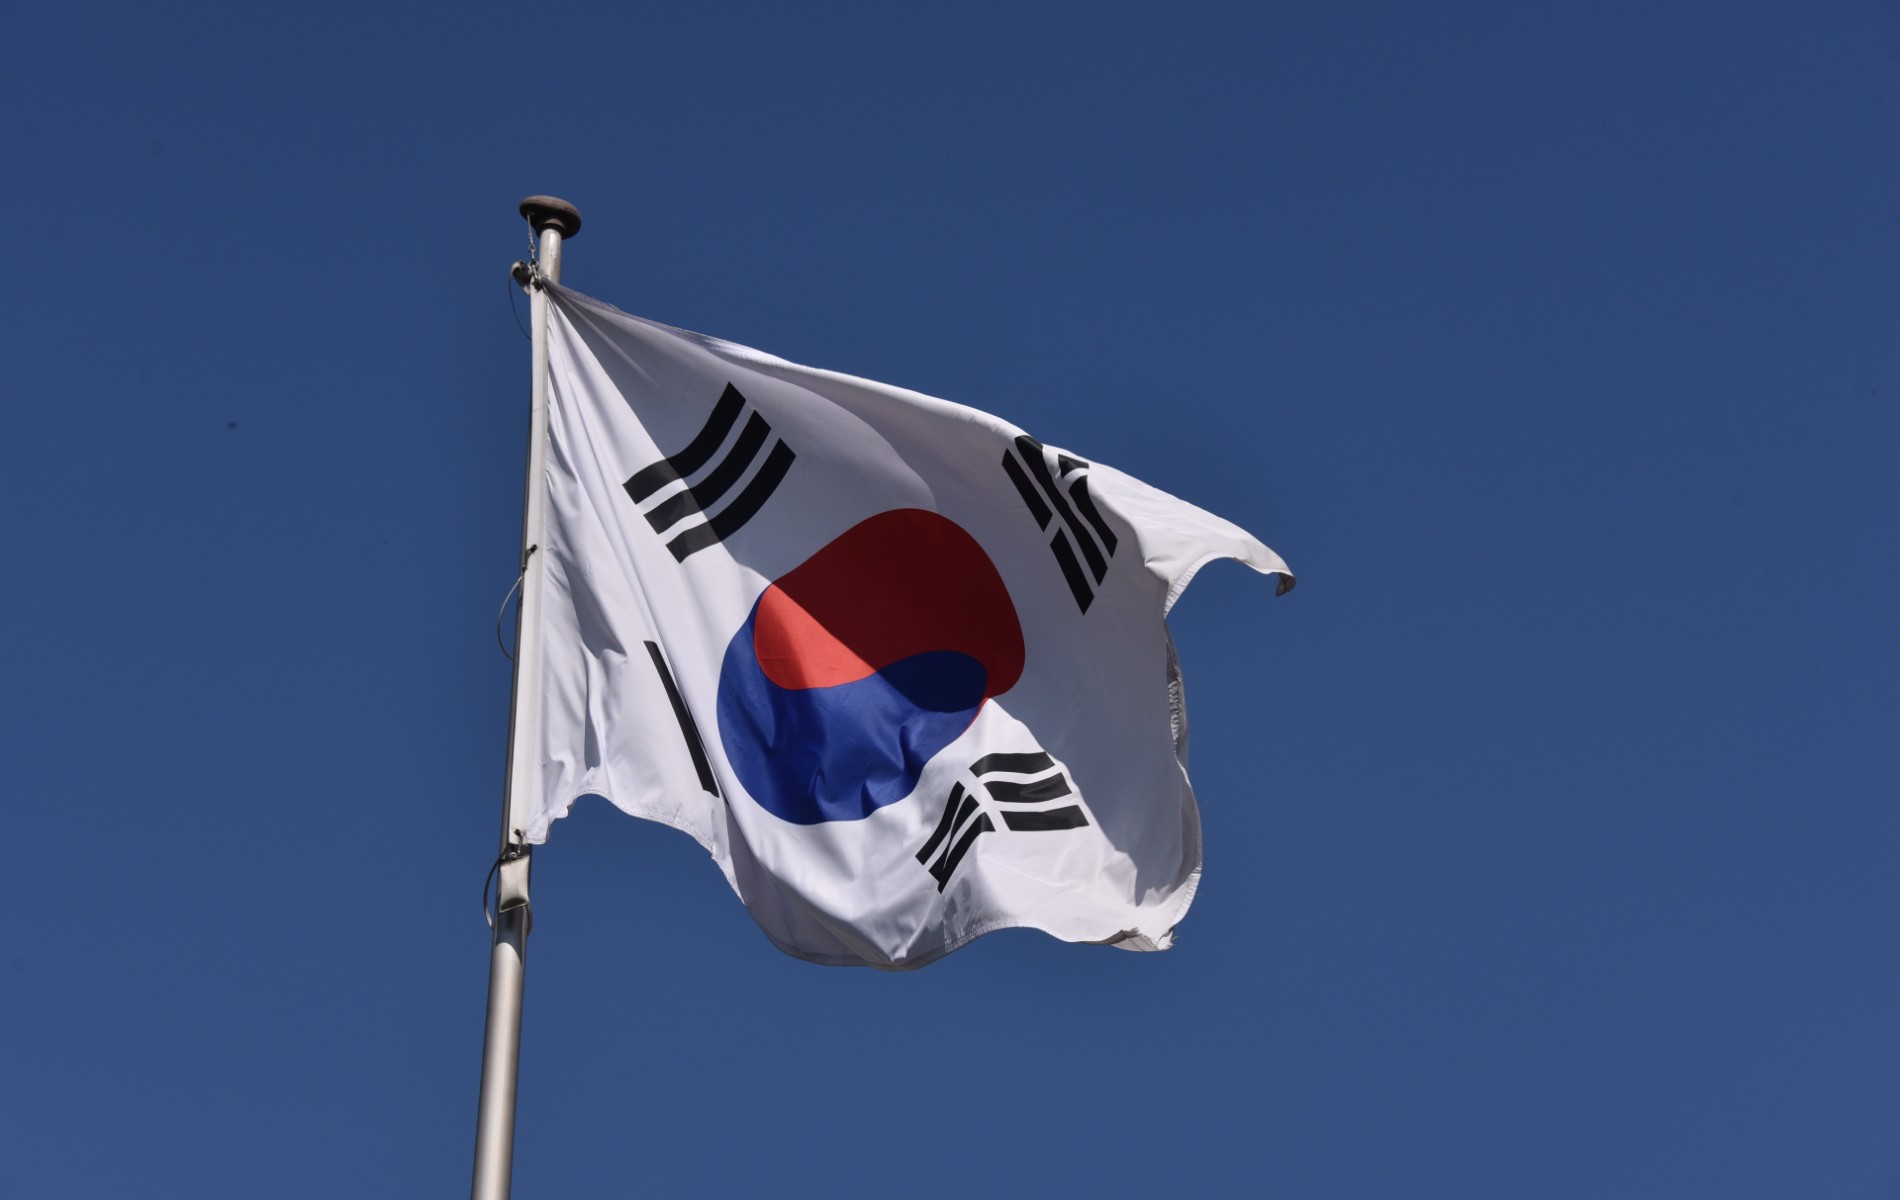 La Corée du Sud investit massivement pour soutenir les concepteurs de semi-conducteurs